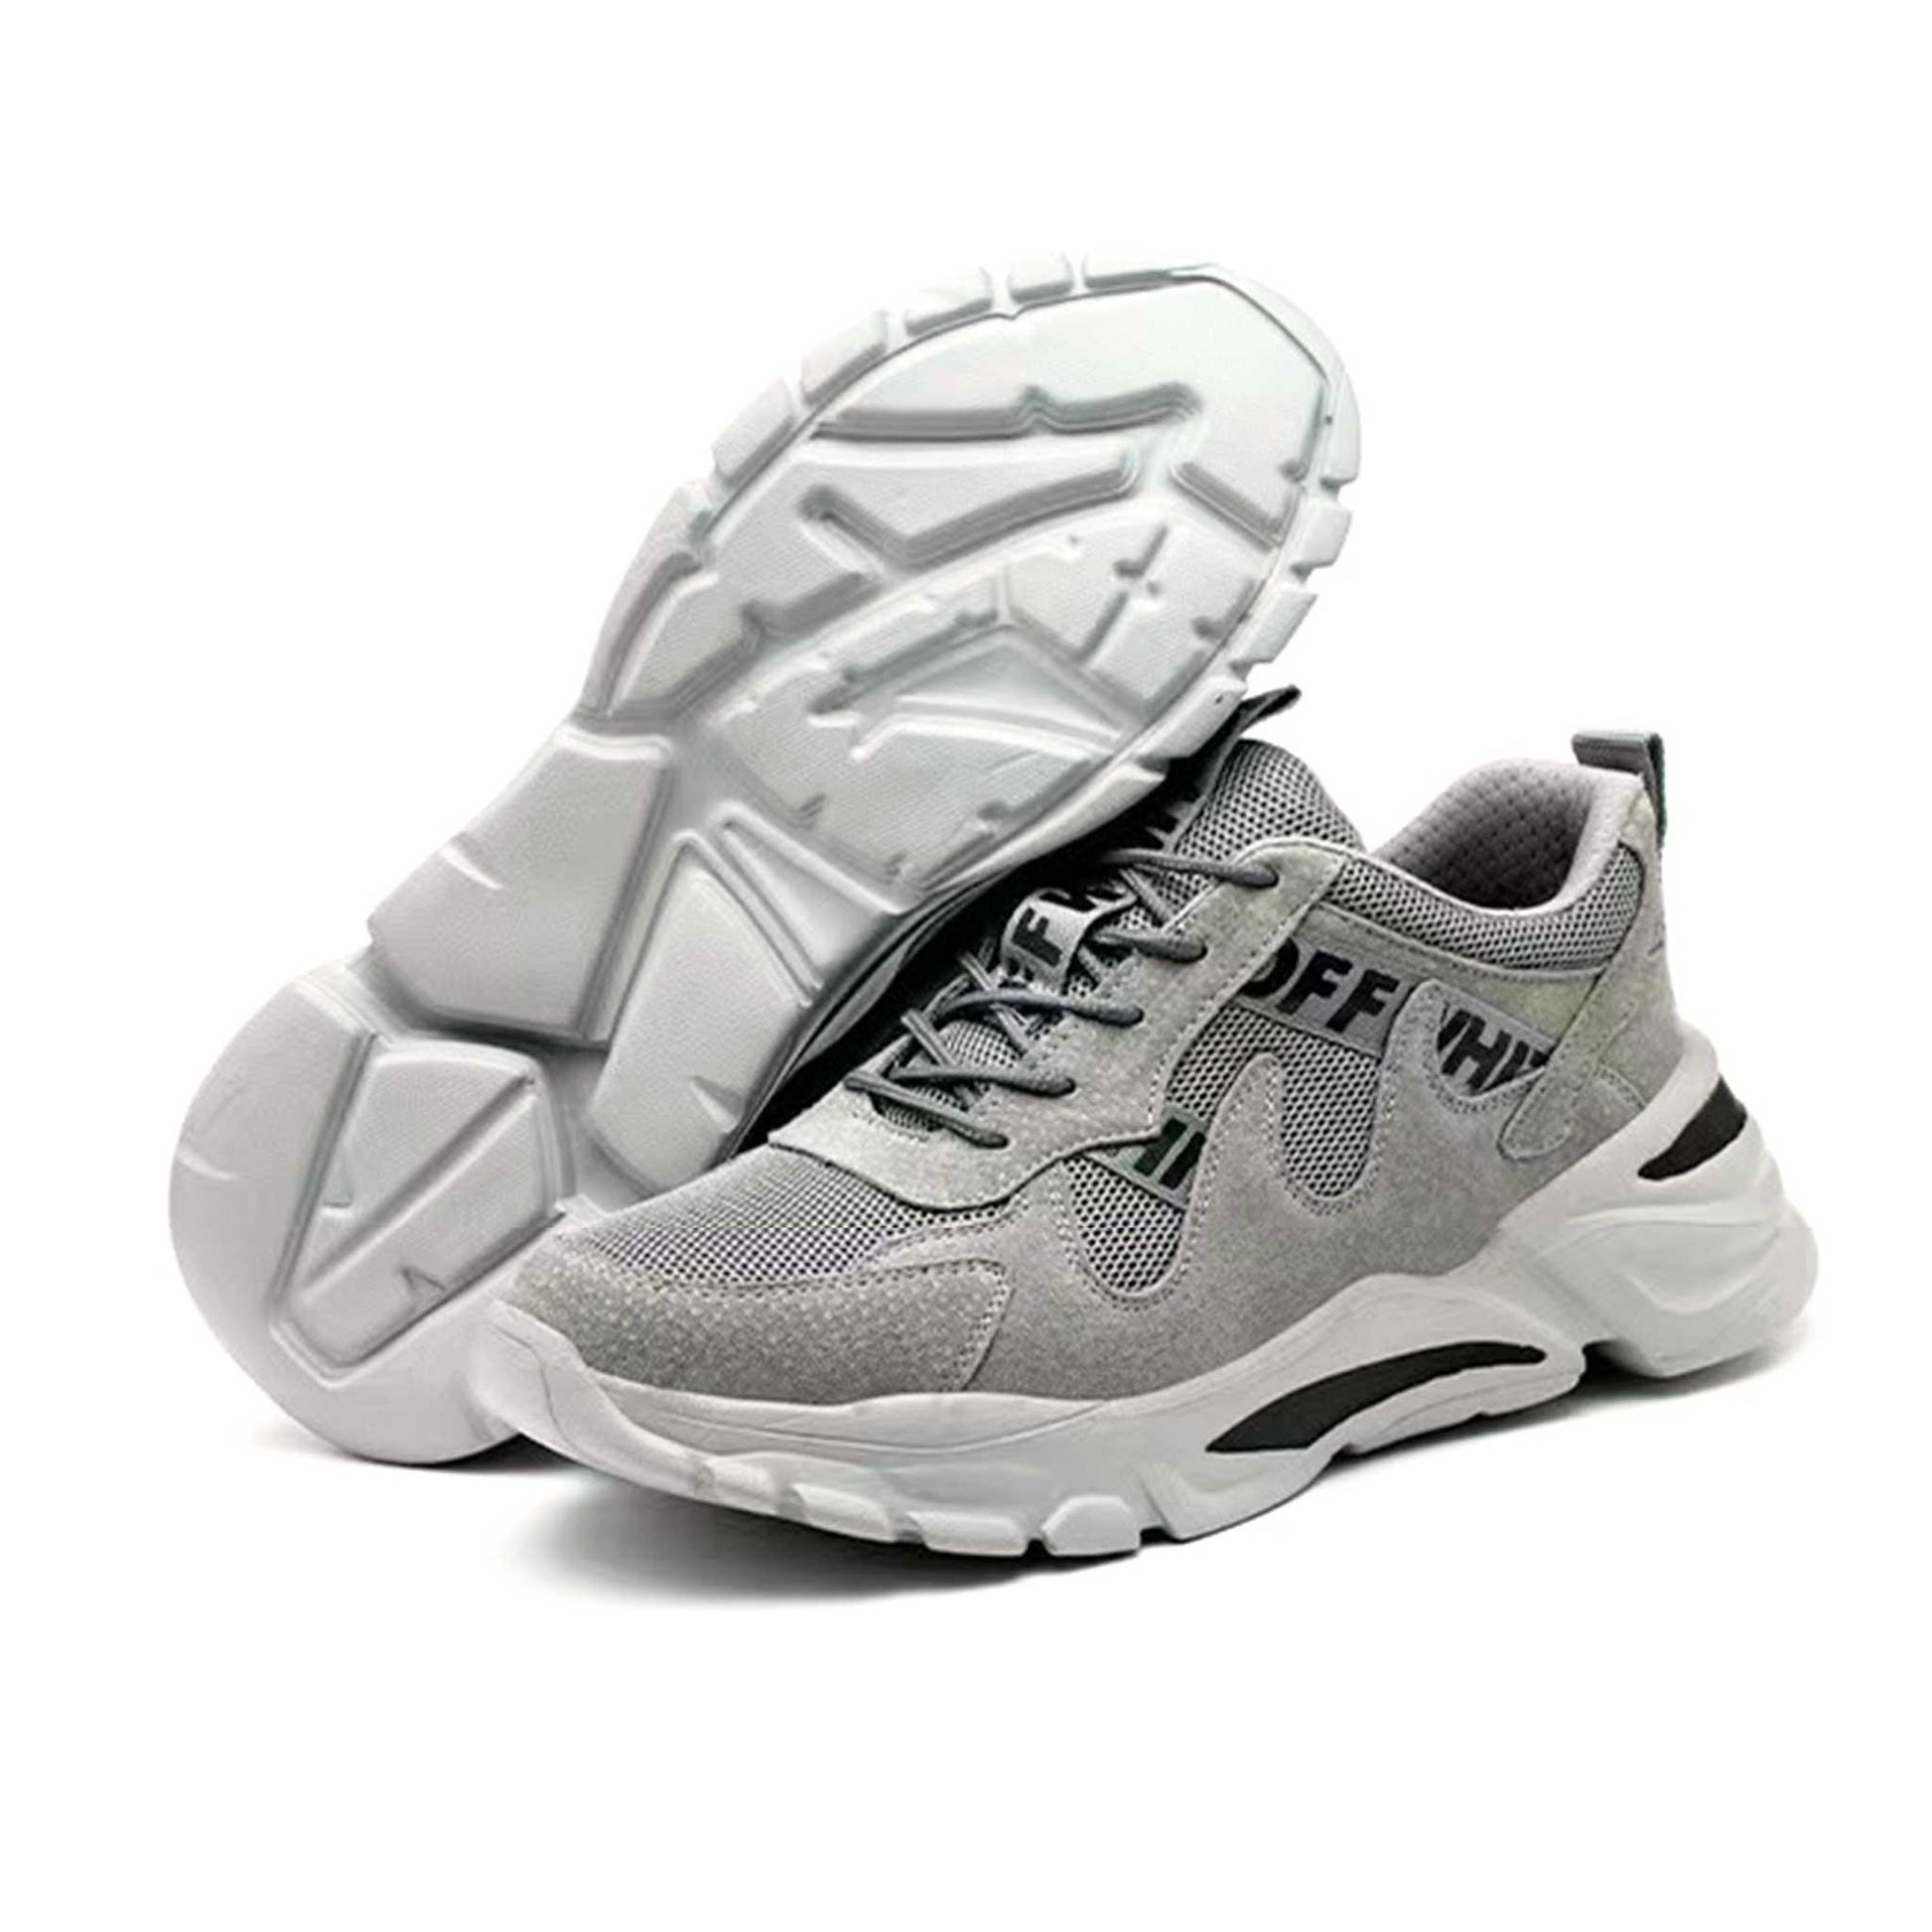 Women's Steel Toe Shoes - Lightweight | Z015 - USINE PRO Footwear